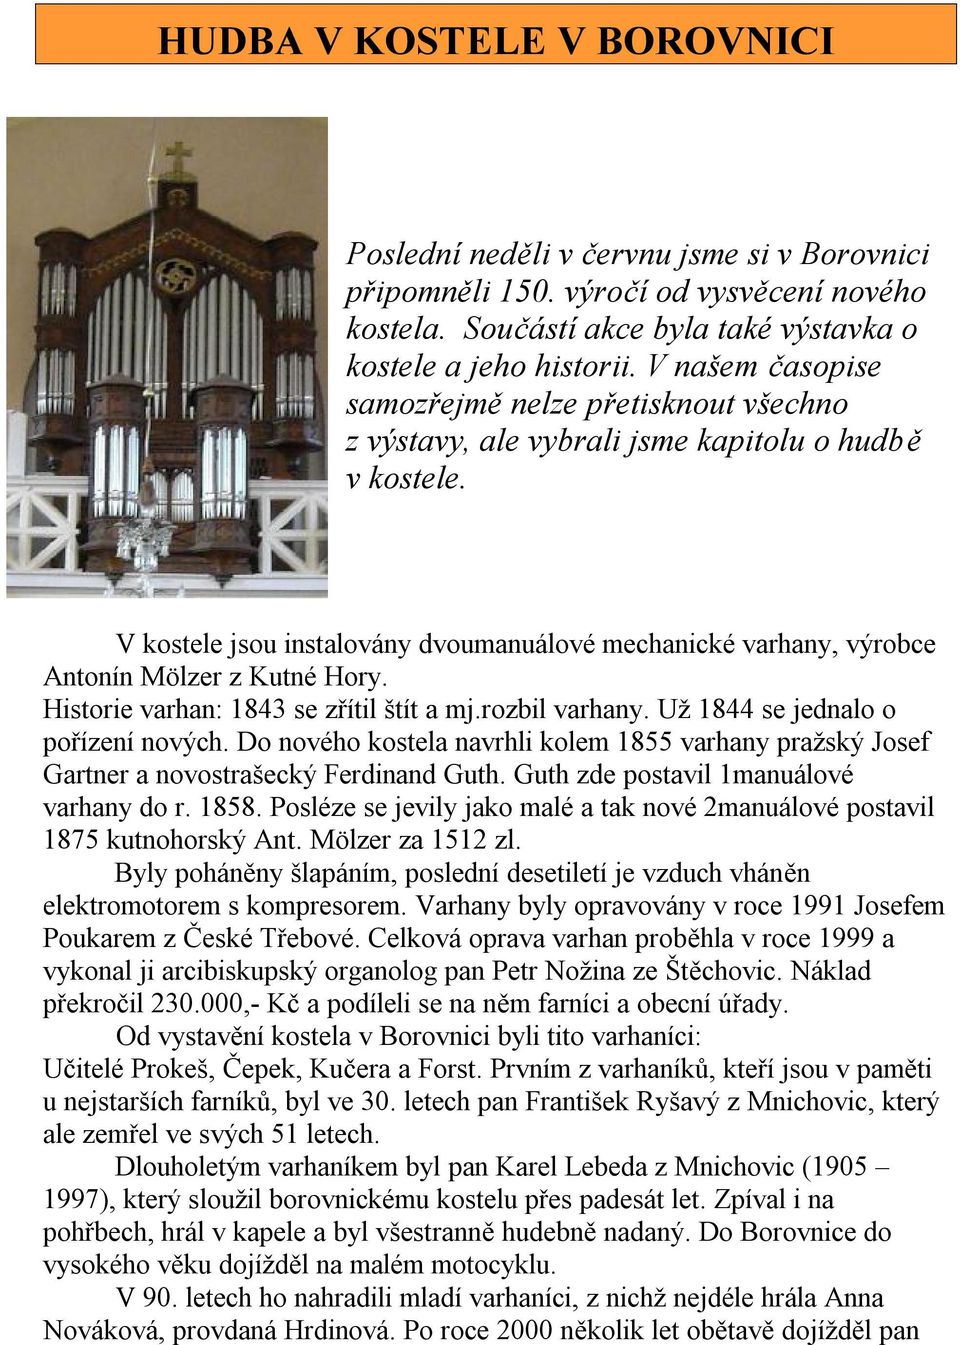 V kostele jsou instalovány dvoumanuálové mechanické varhany, výrobce Antonín Mölzer z Kutné Hory. Historie varhan: 1843 se zřítil štít a mj.rozbil varhany. Už 1844 se jednalo o pořízení nových.